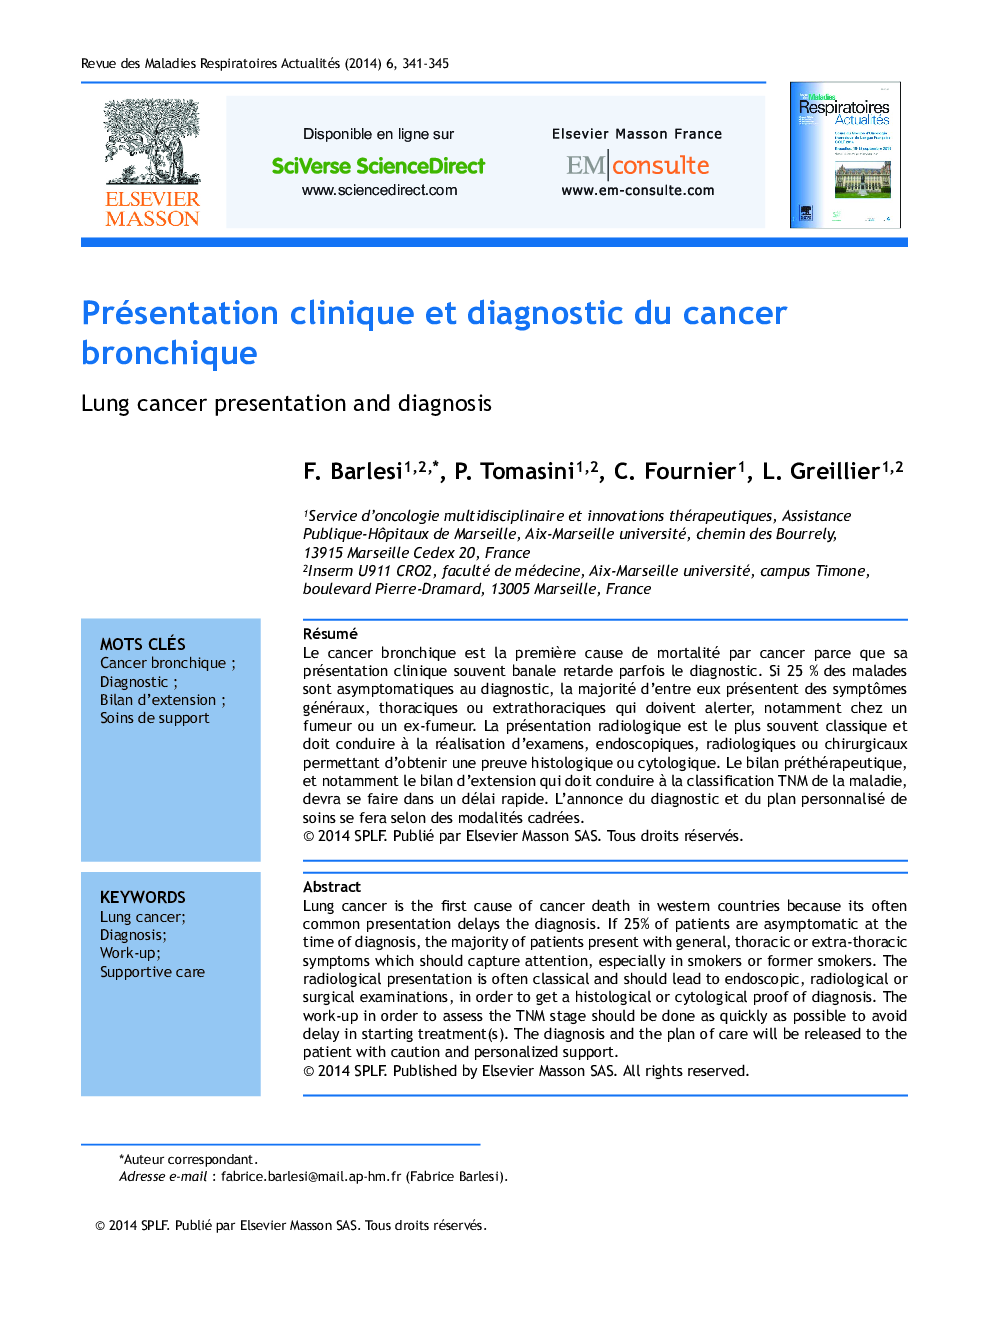 Présentation clinique et diagnostic du cancer bronchique